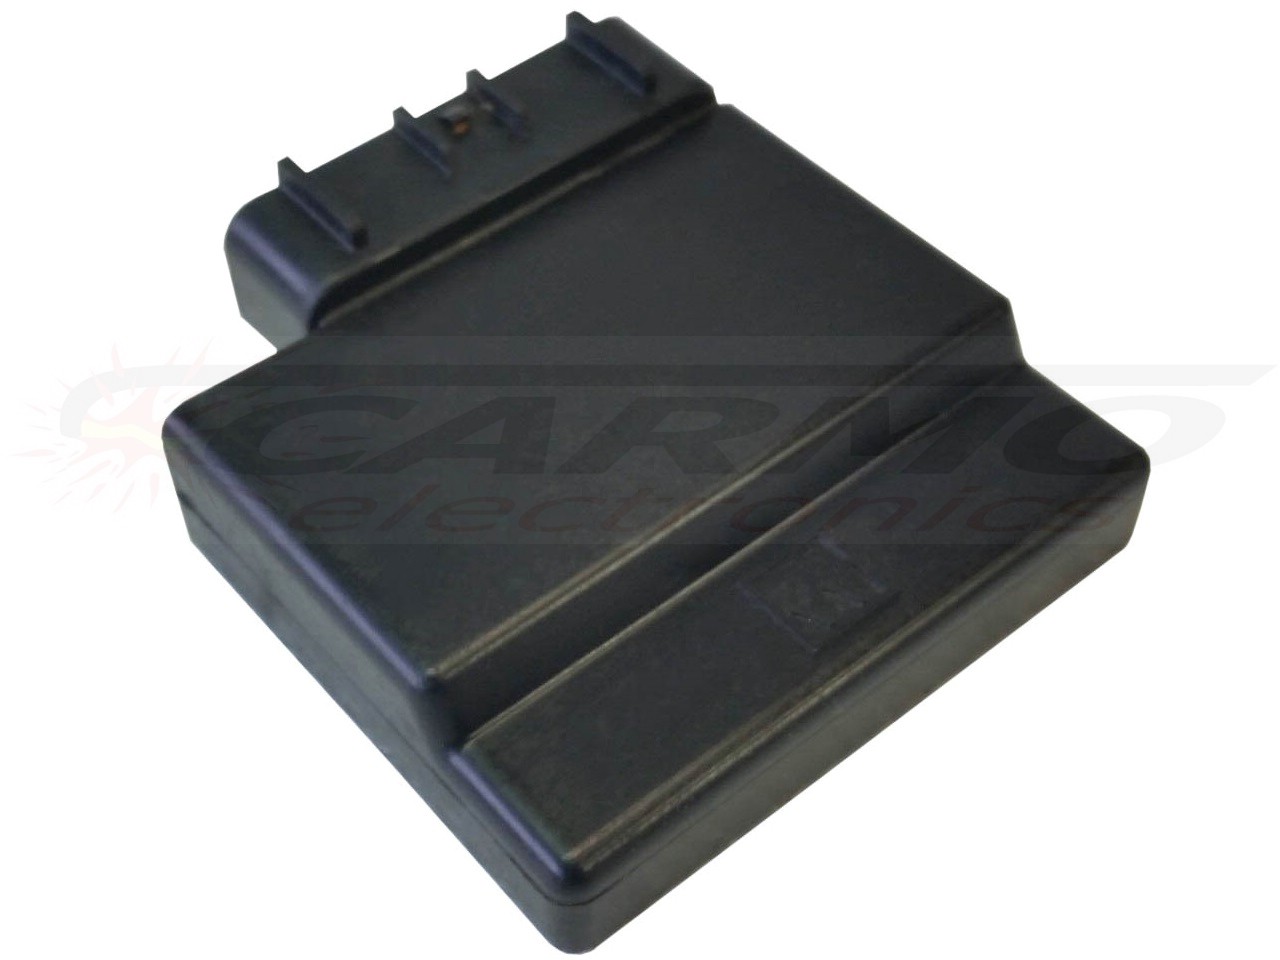 YZ125 TCI CDI dispositif de commande boîte noire (5NY-00, 5NY-01, 5NY-10, 5NY-11)